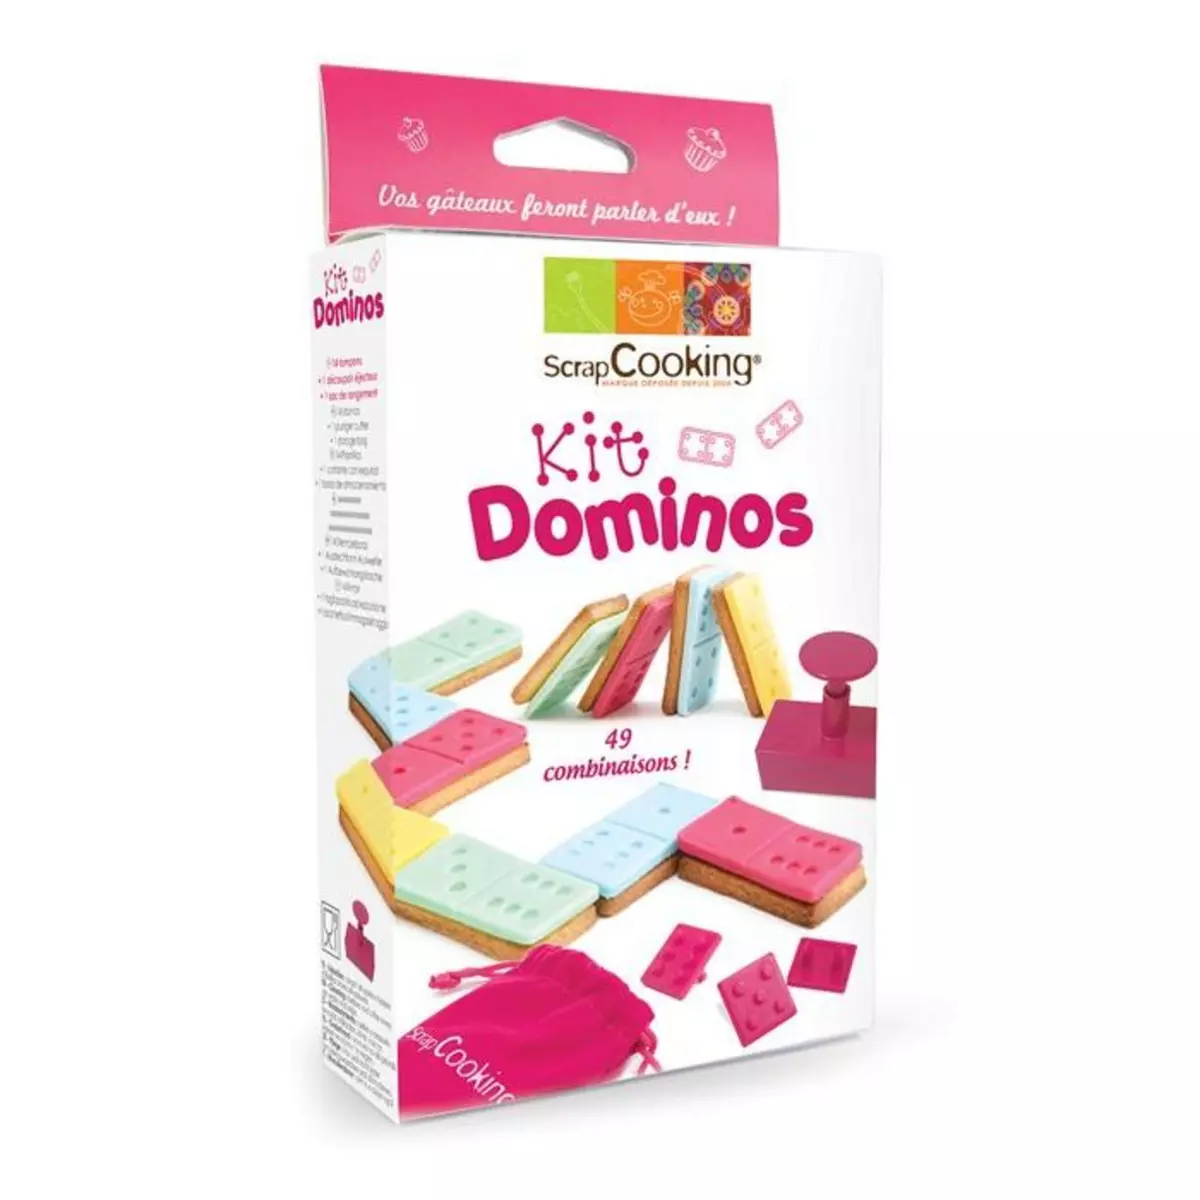 SCRAPCOOKING Kit Dominos pour biscuits et pâte à sucre